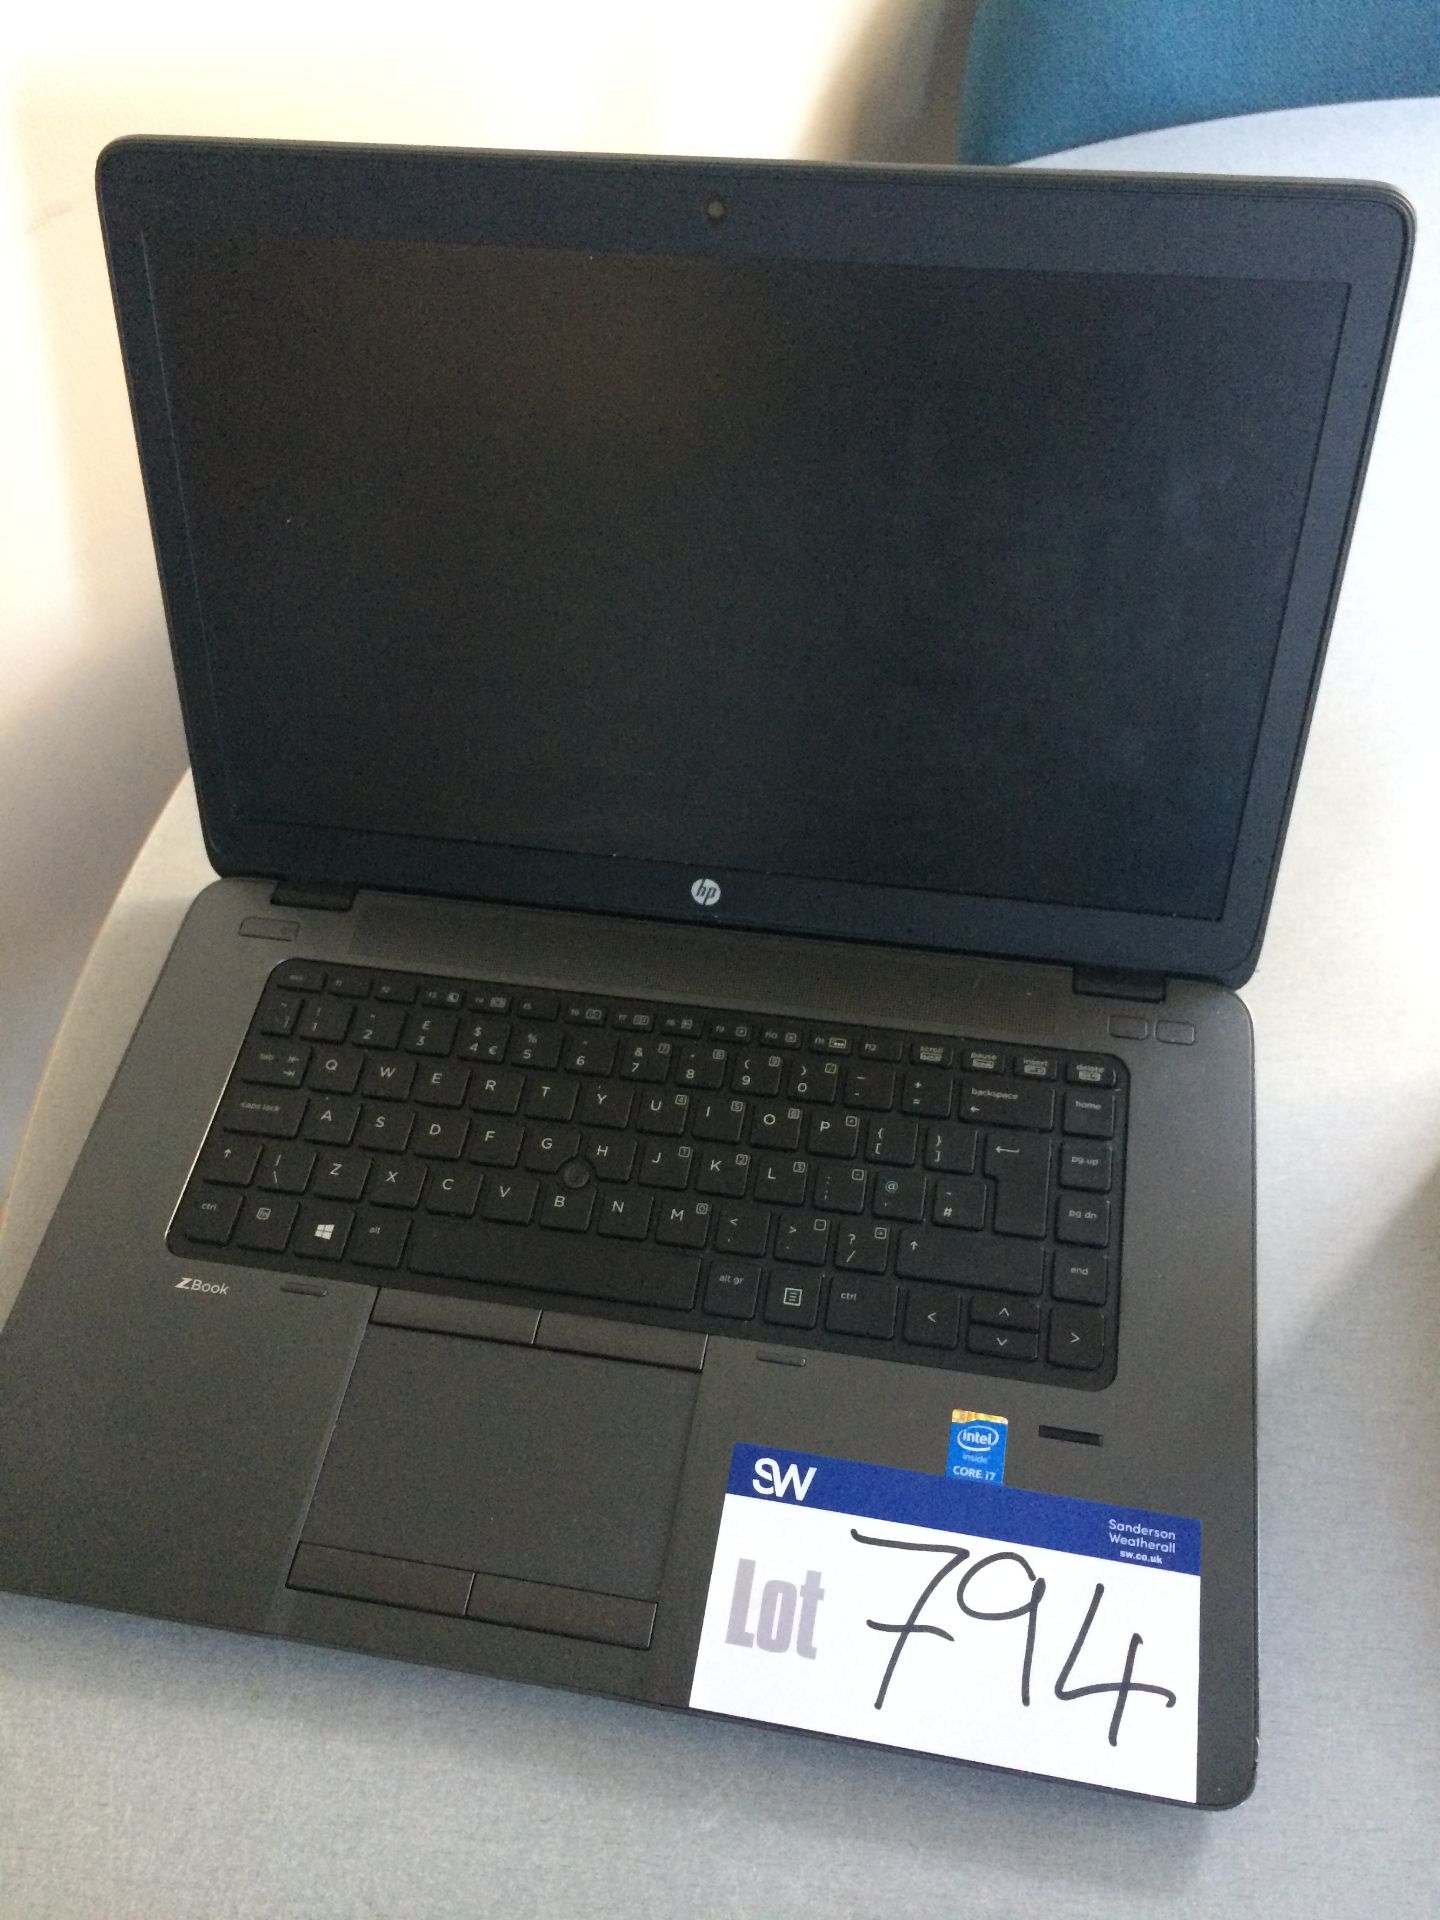 HP ZBook 15u Laptop Computer, Intel Core I7 Processor (No Charger)